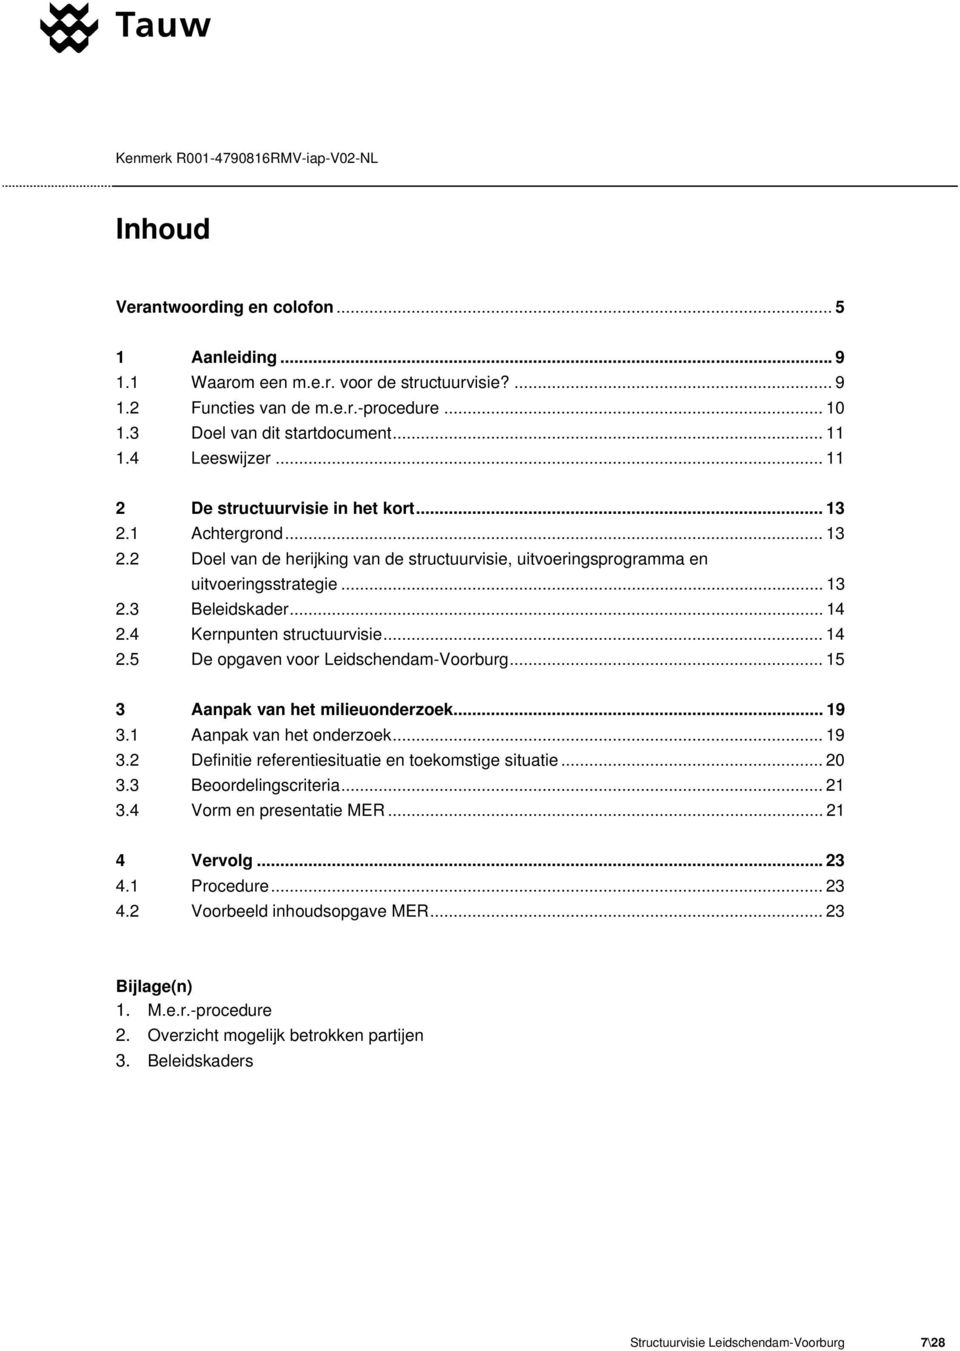 .. 14 2.4 Kernpunten structuurvisie... 14 2.5 De opgaven voor Leidschendam-Voorburg... 15 3 Aanpak van het milieuonderzoek... 19 3.1 Aanpak van het onderzoek... 19 3.2 Definitie referentiesituatie en toekomstige situatie.